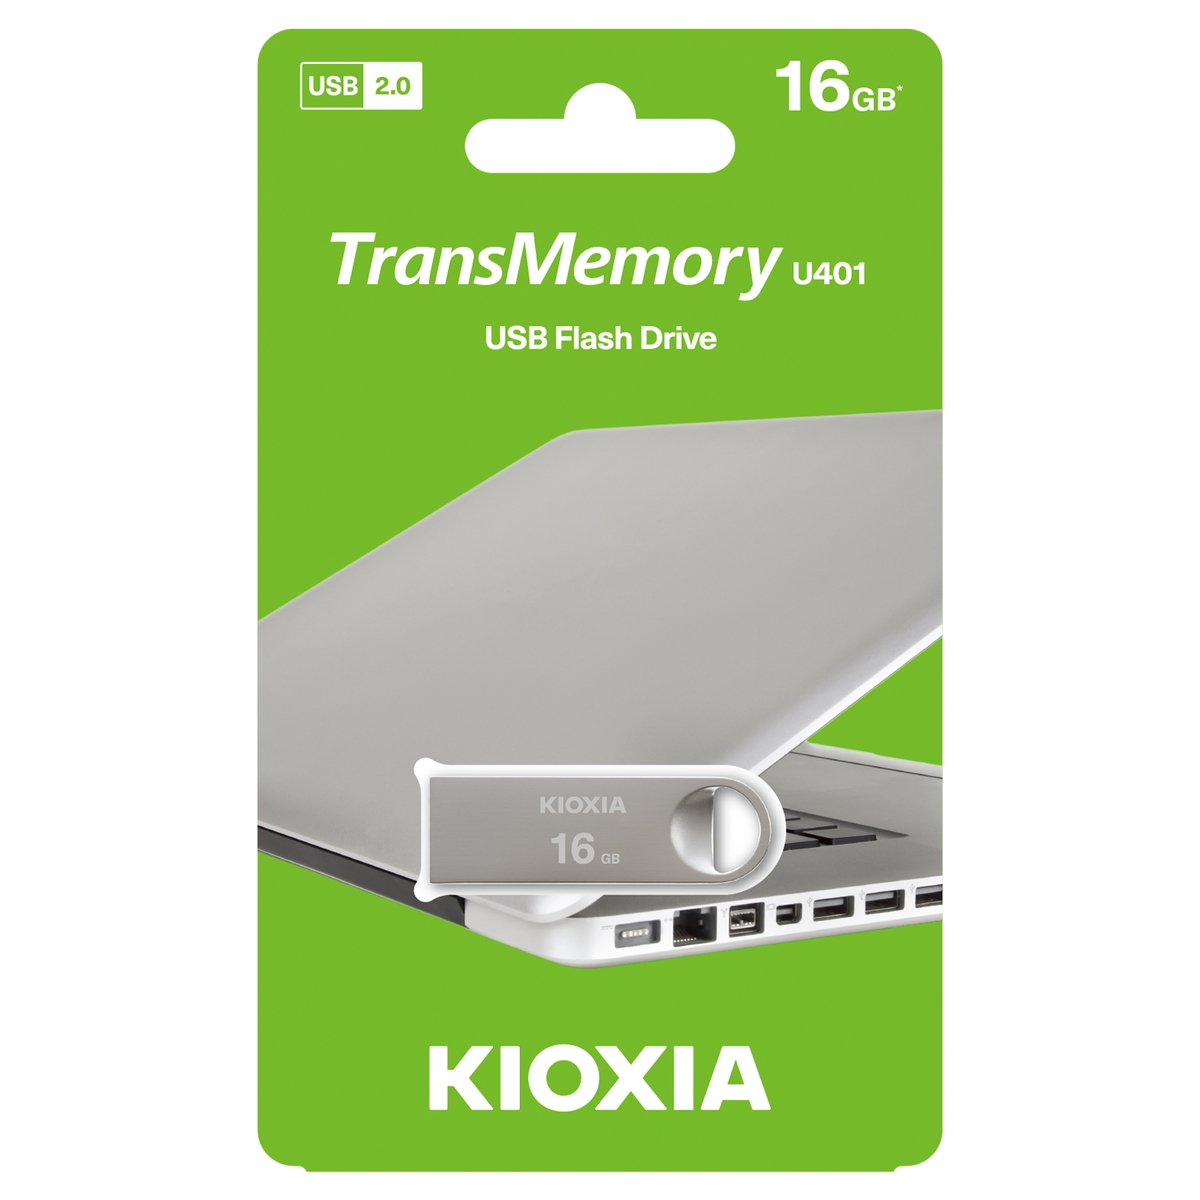 KIOXIA LU401S016GG4 16GB USB 2.0 Flash Drive